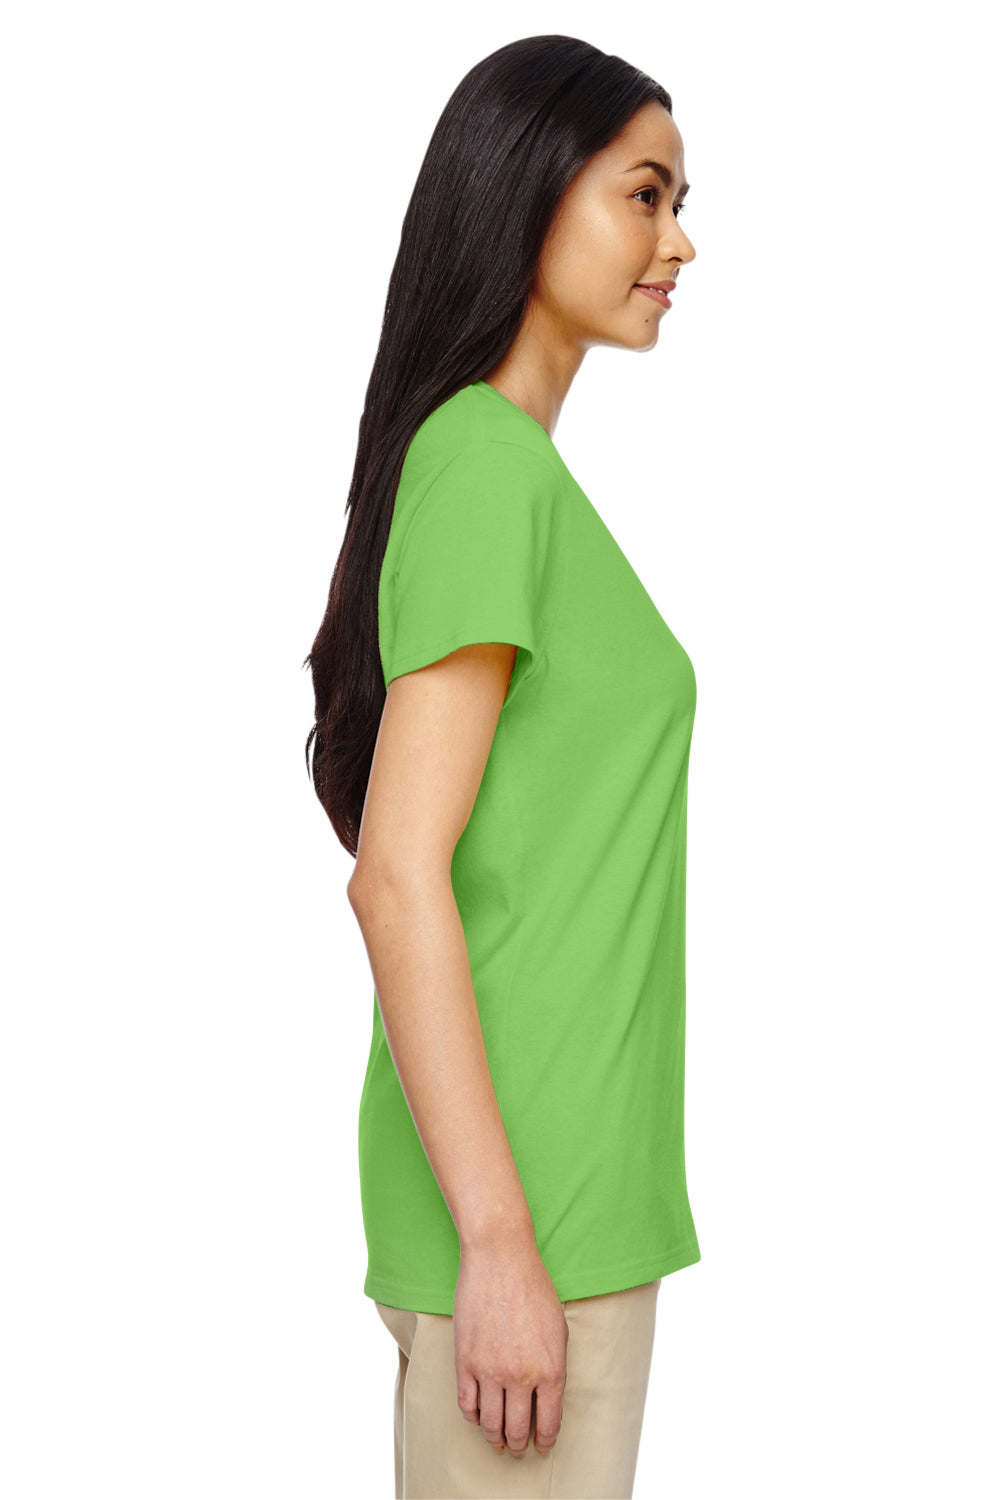 Gildan G500VL Womens Short Sleeve V-Neck T-Shirt Lime Green Side